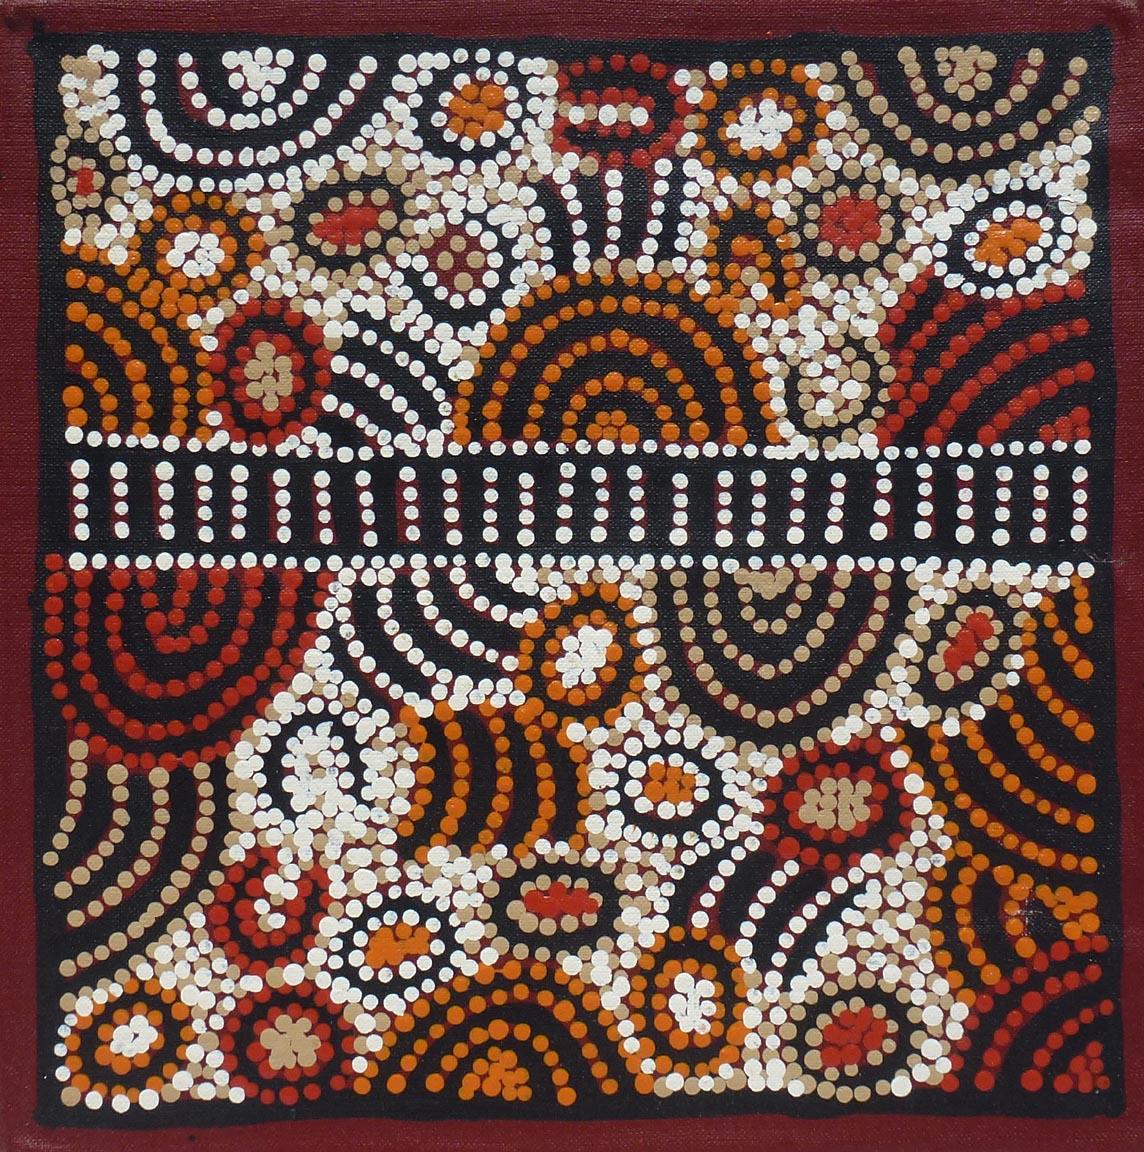 Il s'agit d'une peinture à points fins réalisée par les Aborigènes australiens. 
Dessin Kim Butler Napurrula. Elle est réalisée sur une toile non tendue et est datée. 
2015.  La taille totale de la toile est d'environ 16